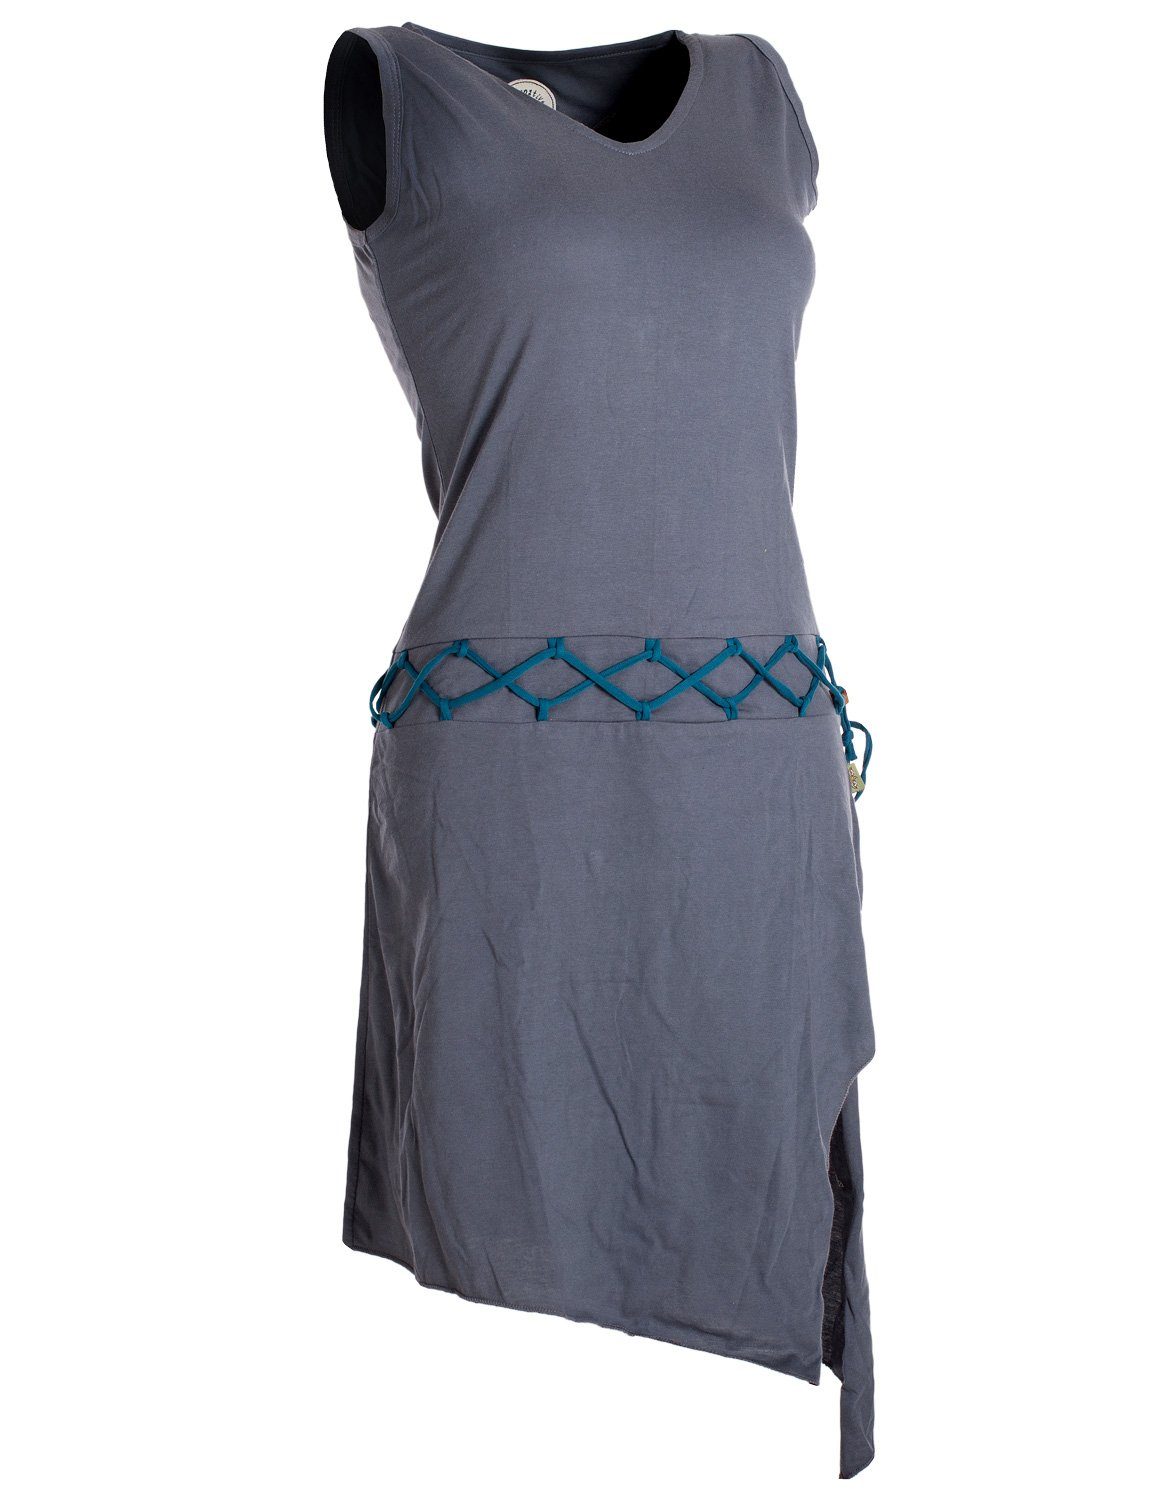 Vishes Sommerkleid Goa Gürtel-Schnürung Elfen Hippie, Beinausschnitt grau Boho, Kleid Style asymmetrisch Ärmelloses